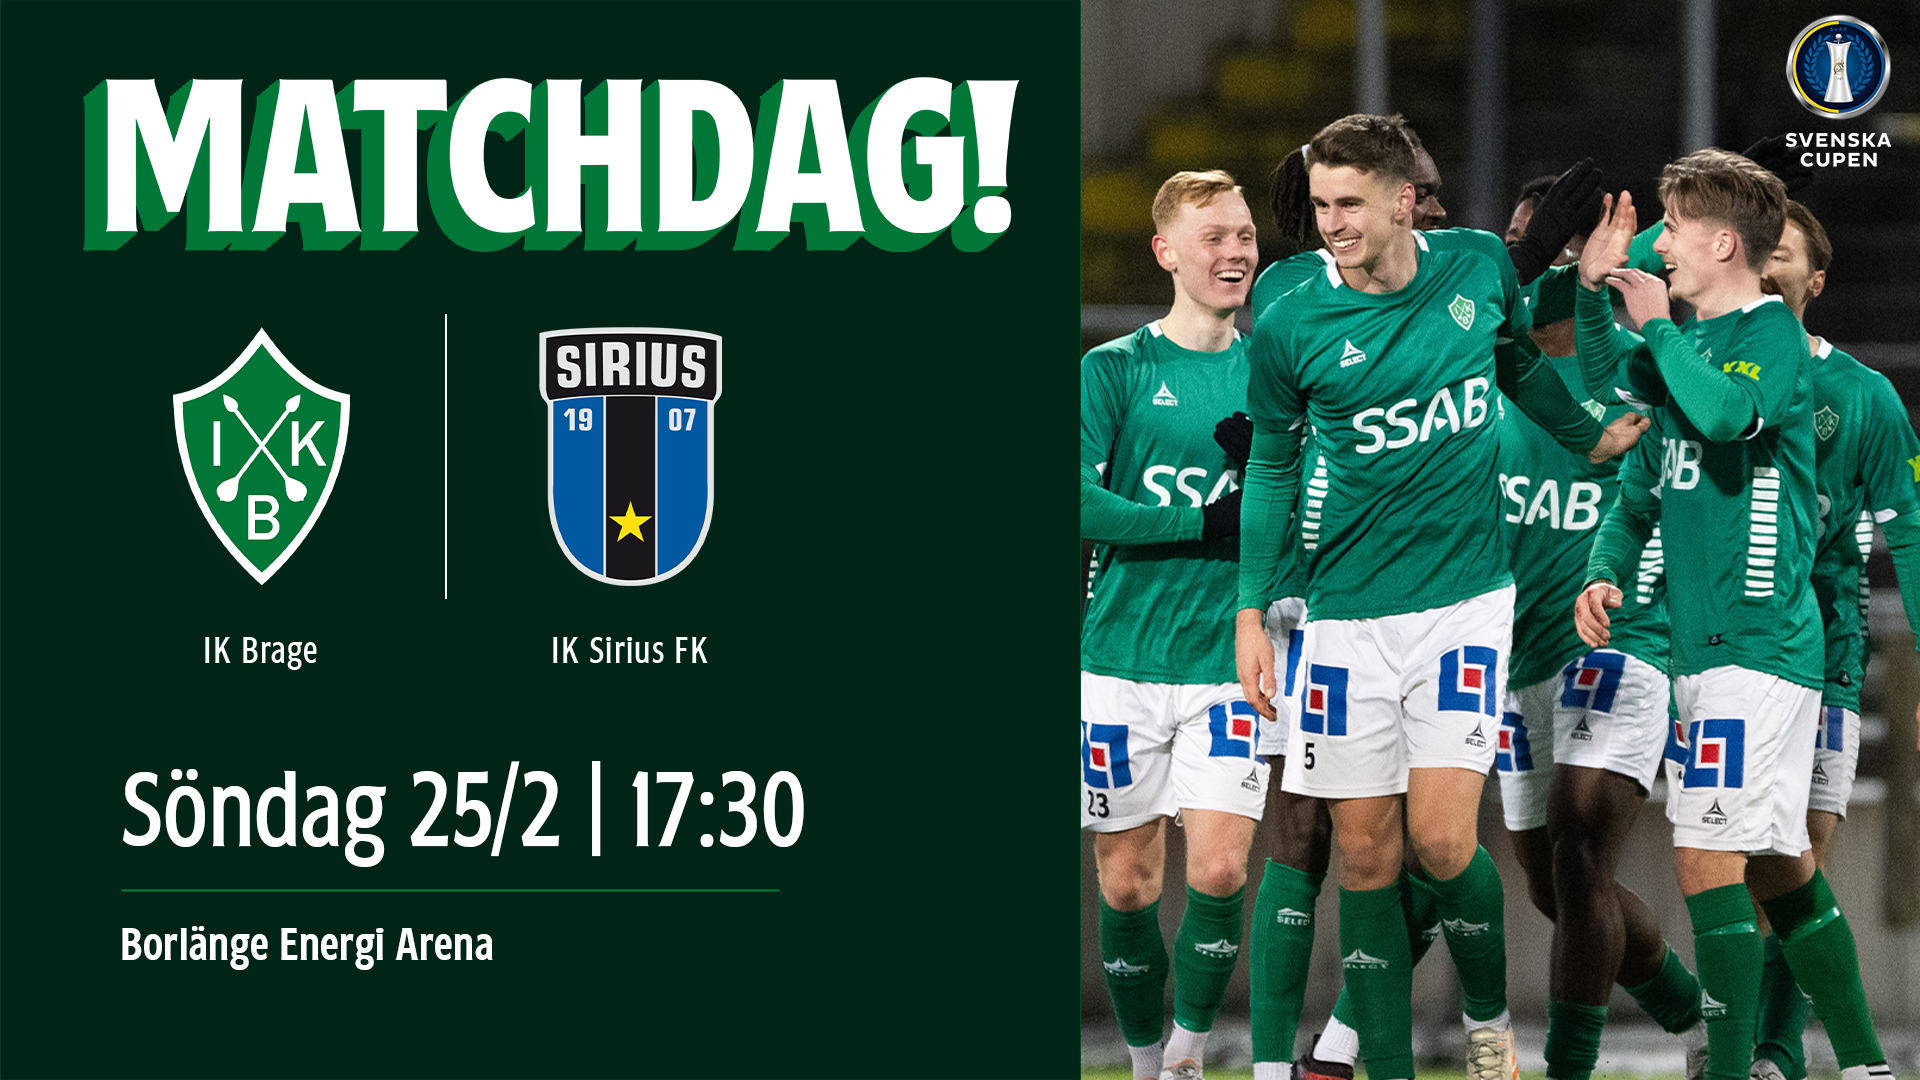 Matchdag: IK Brage - IK Sirius FK